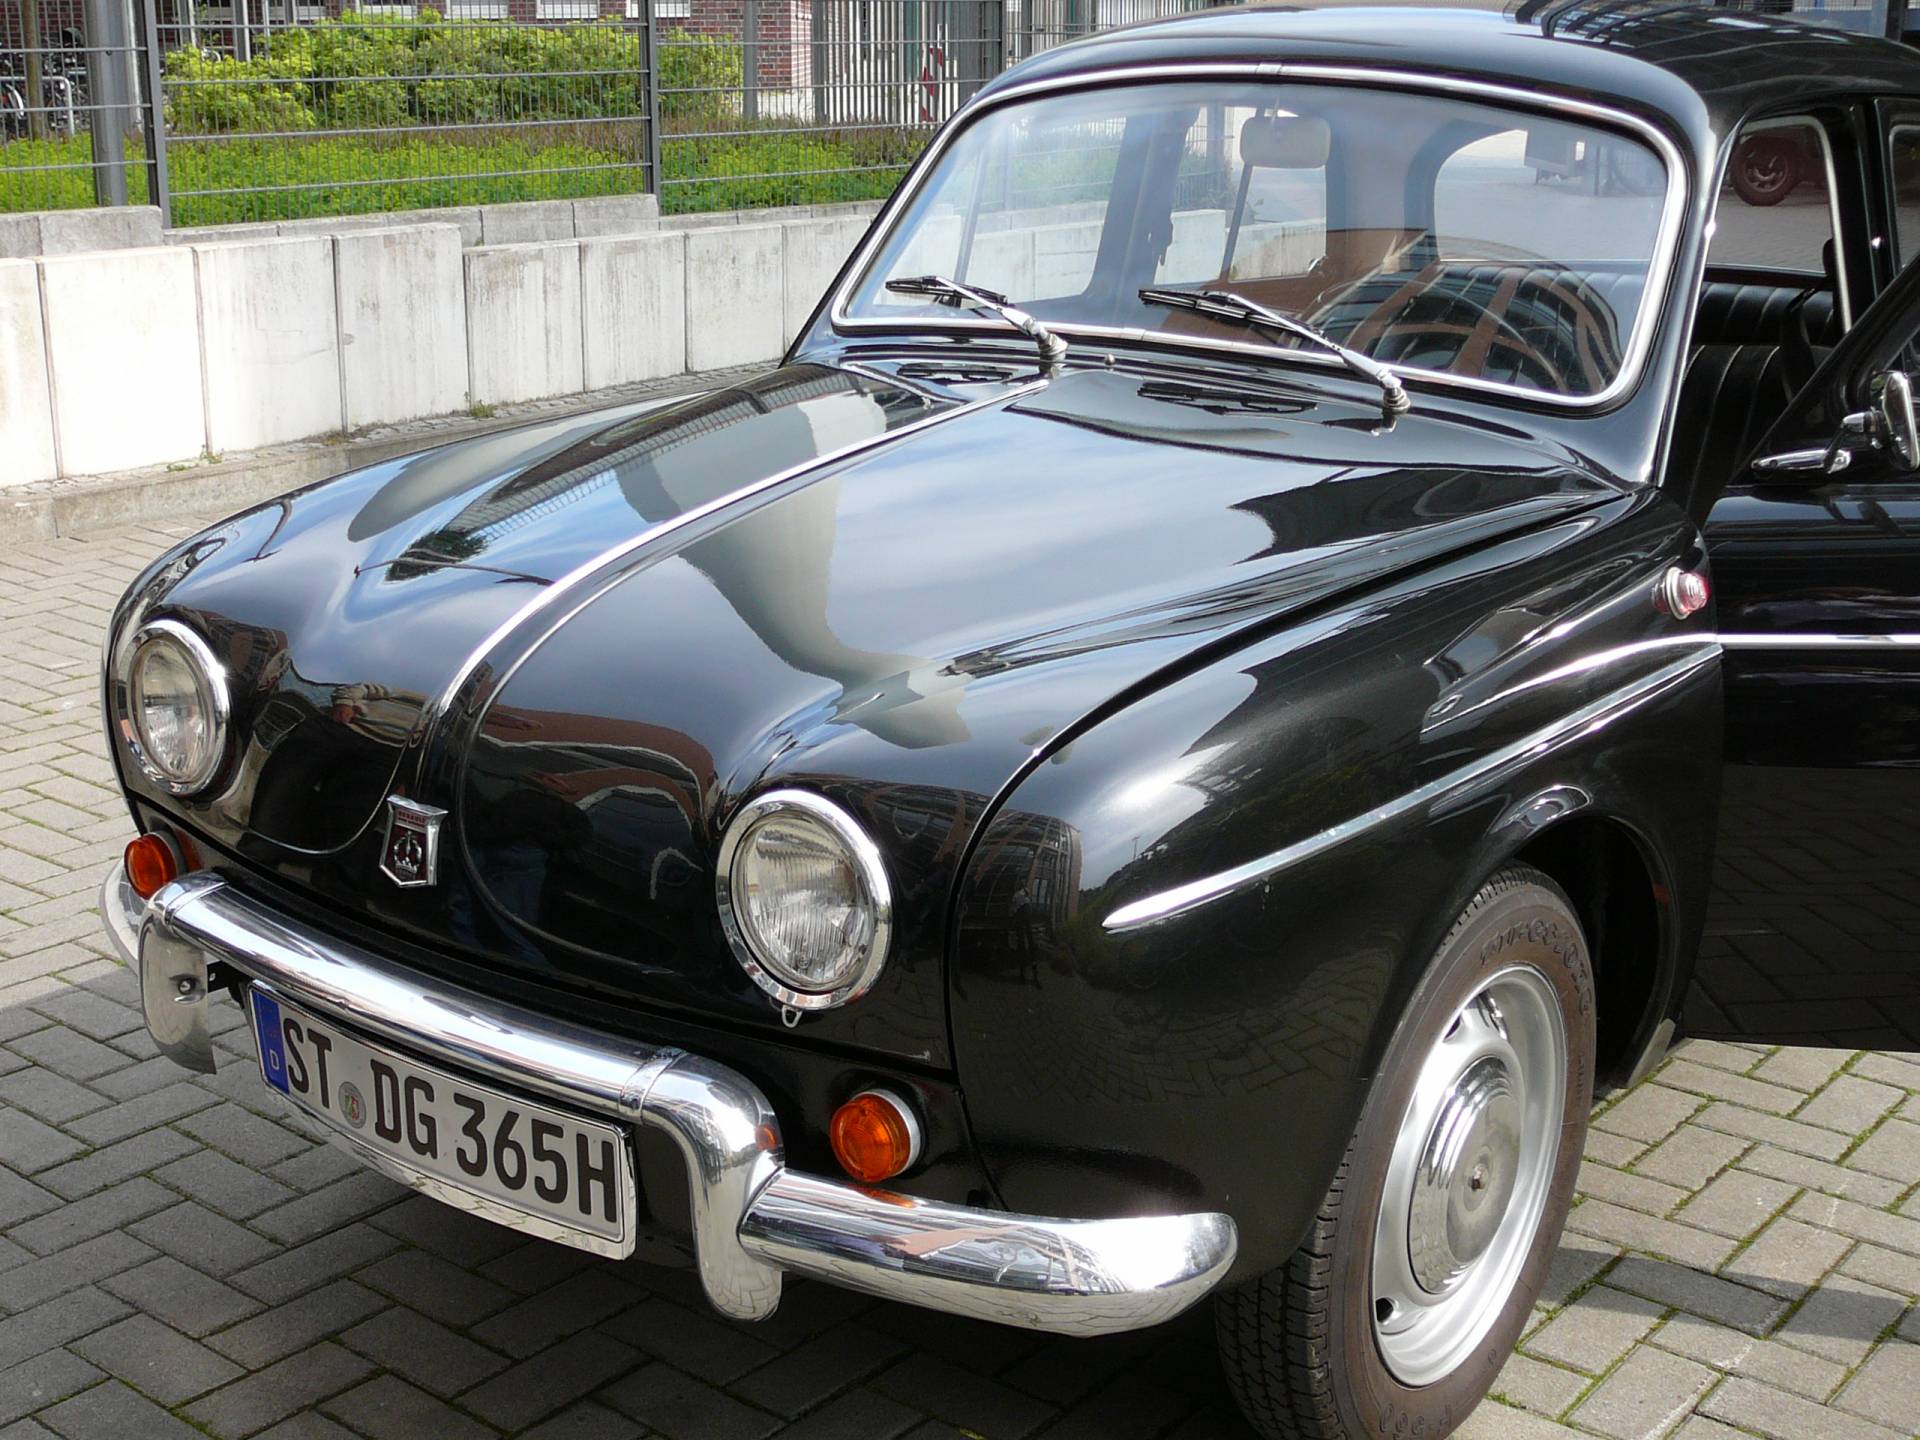 kwaliteit kort moeilijk tevreden te krijgen Te koop: Renault Dauphine Gordini (1965) aangeboden voor € 7.500